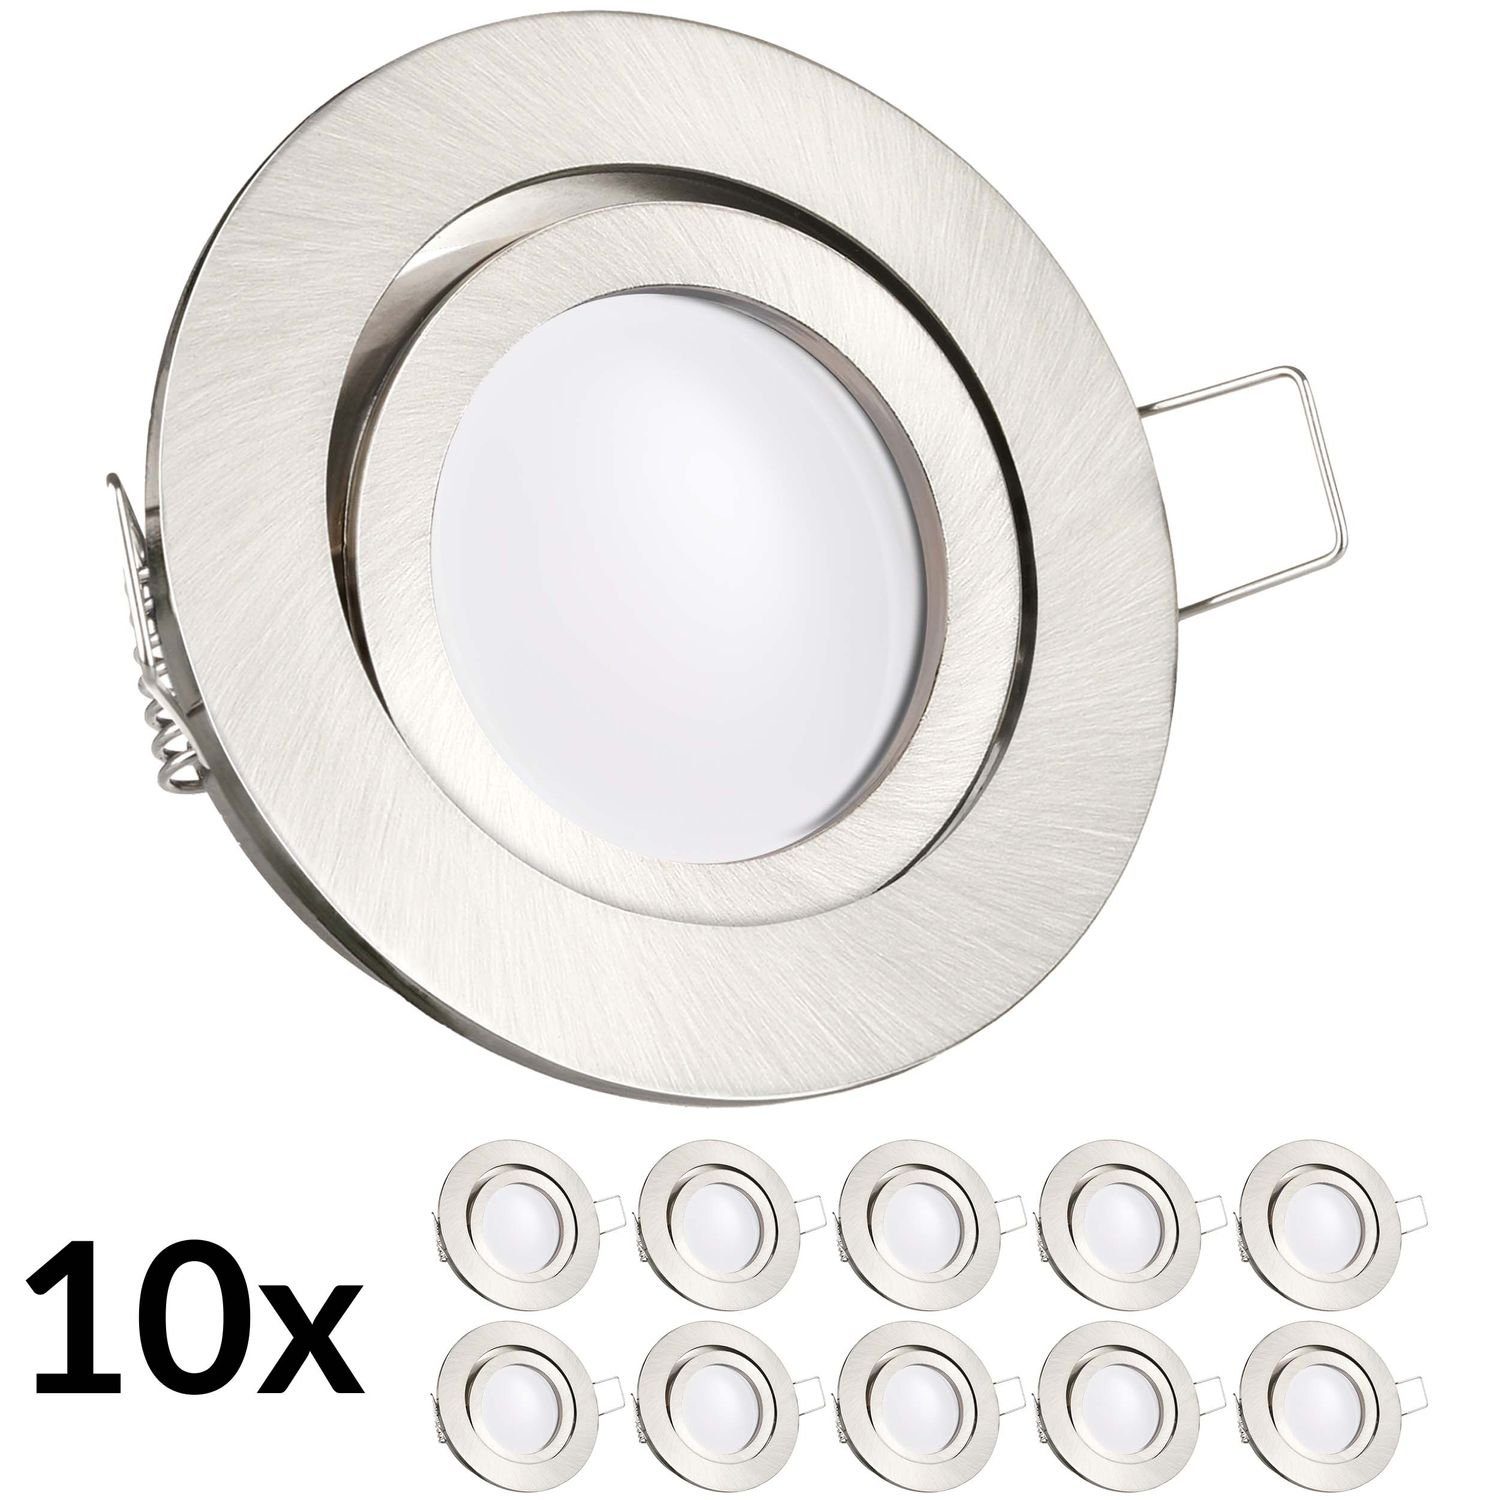 LEDANDO LED Einbaustrahler 10er LED Einbaustrahler Set extra flach in edelstahl / silber gebürste